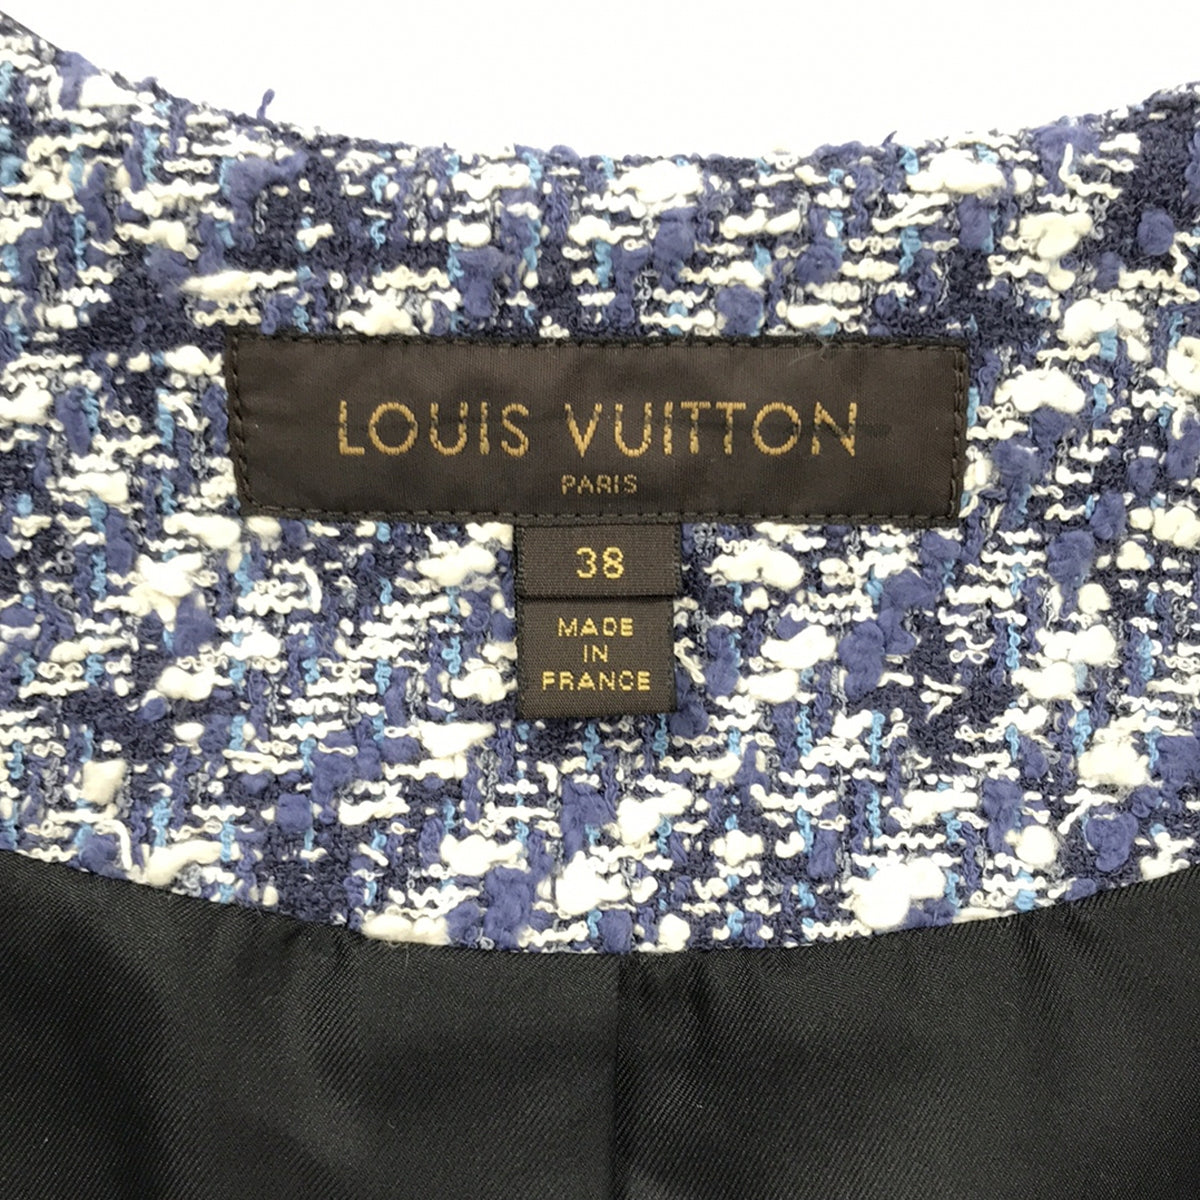 Louis Vuitton / ルイヴィトン | 2014SS | モノグラム柄 ツイード ノーカラージャケット | 38 | レディース